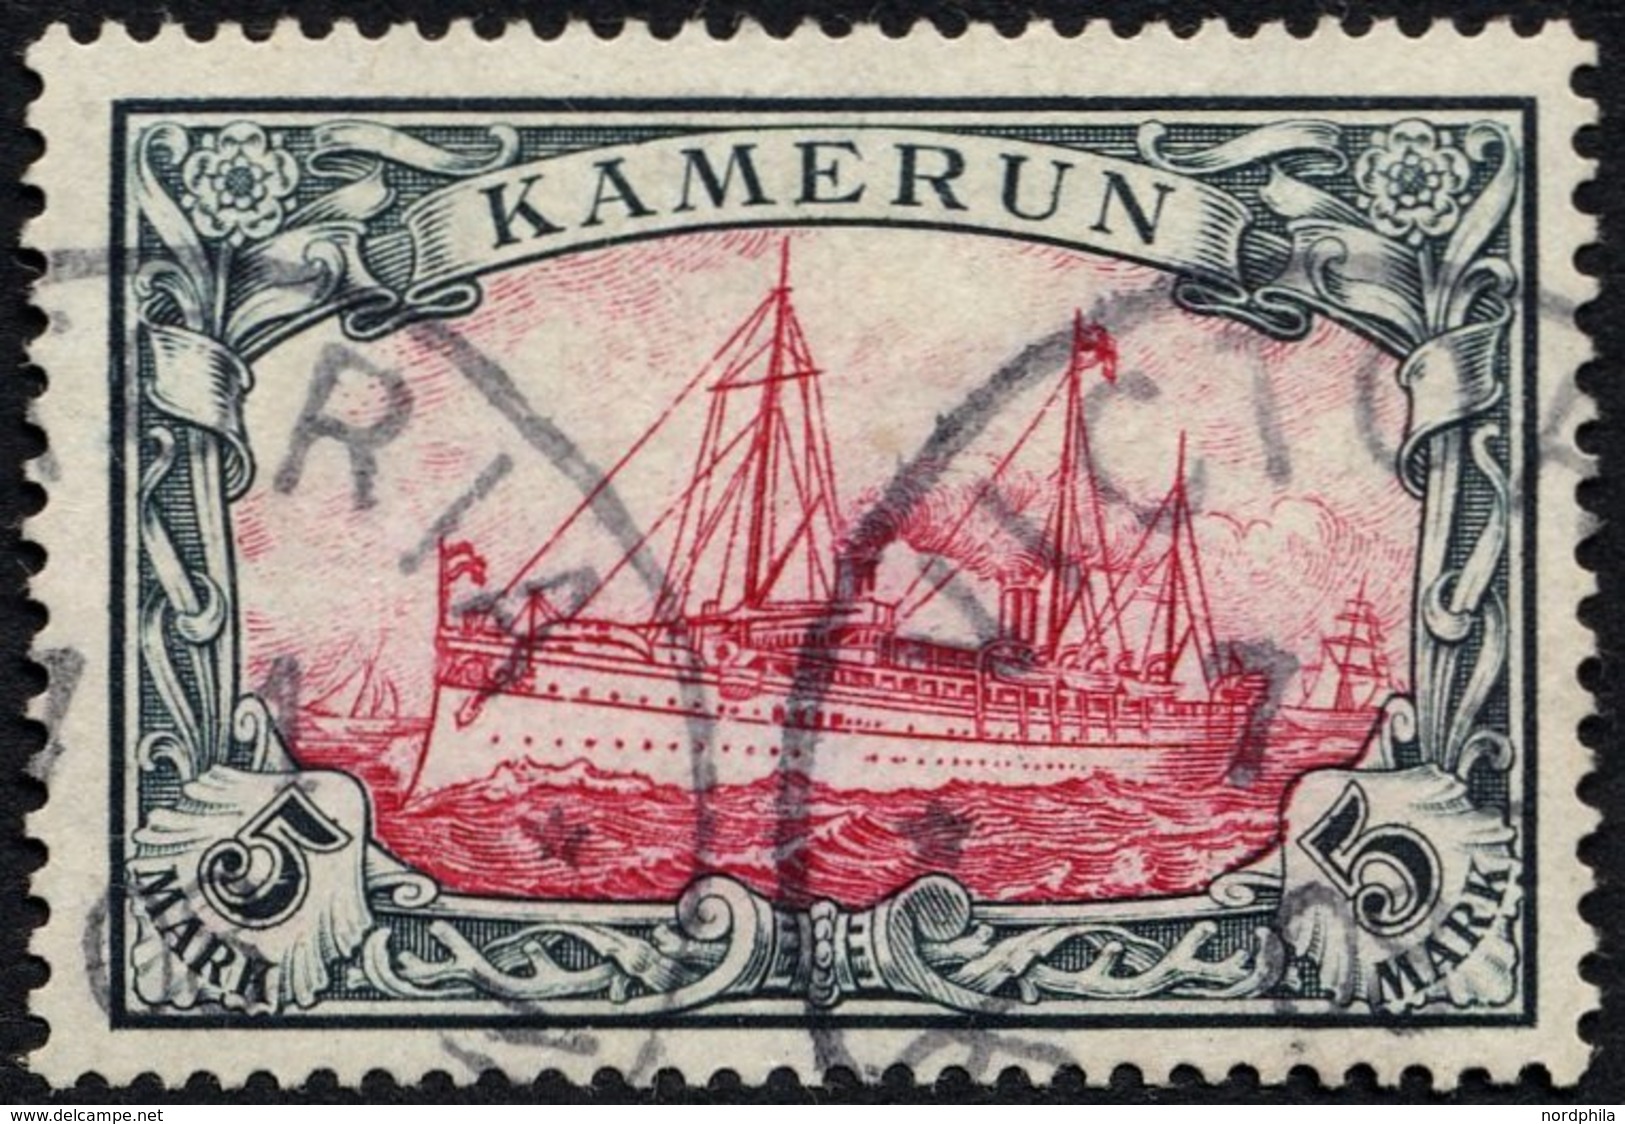 KAMERUN 19 O, 1900, 5 M. Grünschwarz/bräunlichkarmin, Ohne Wz., Stempel VICTORIA, Pracht, Signiert Senf, Mi. 600.- - Camerún